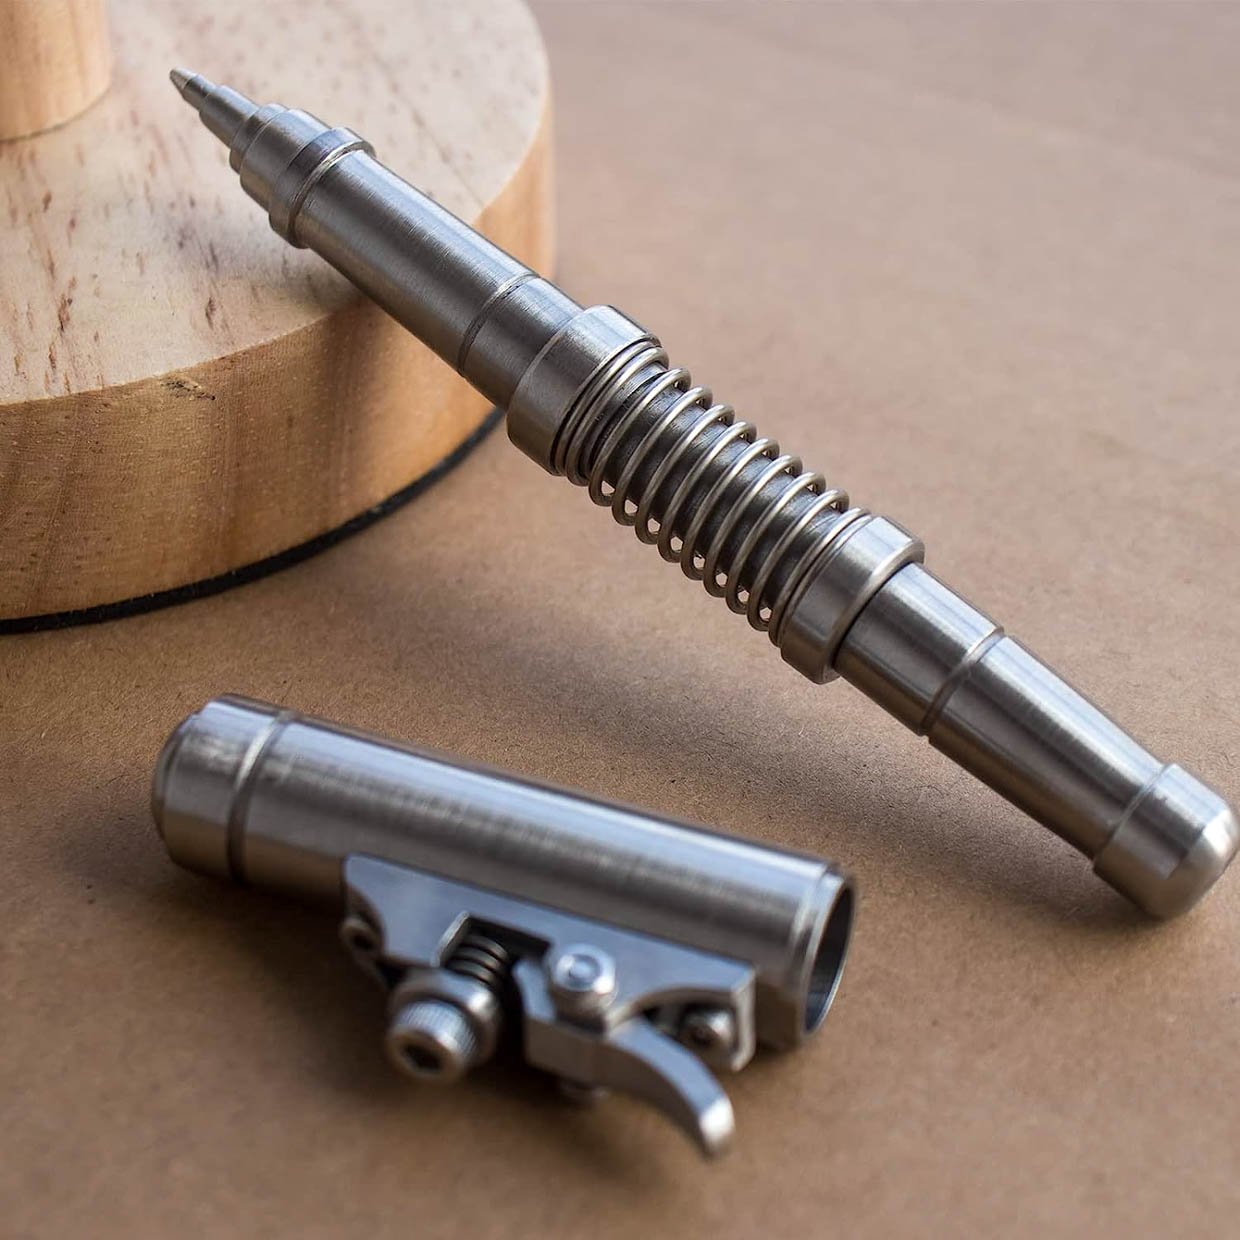 Titanium alloy pen nib : r/wacom